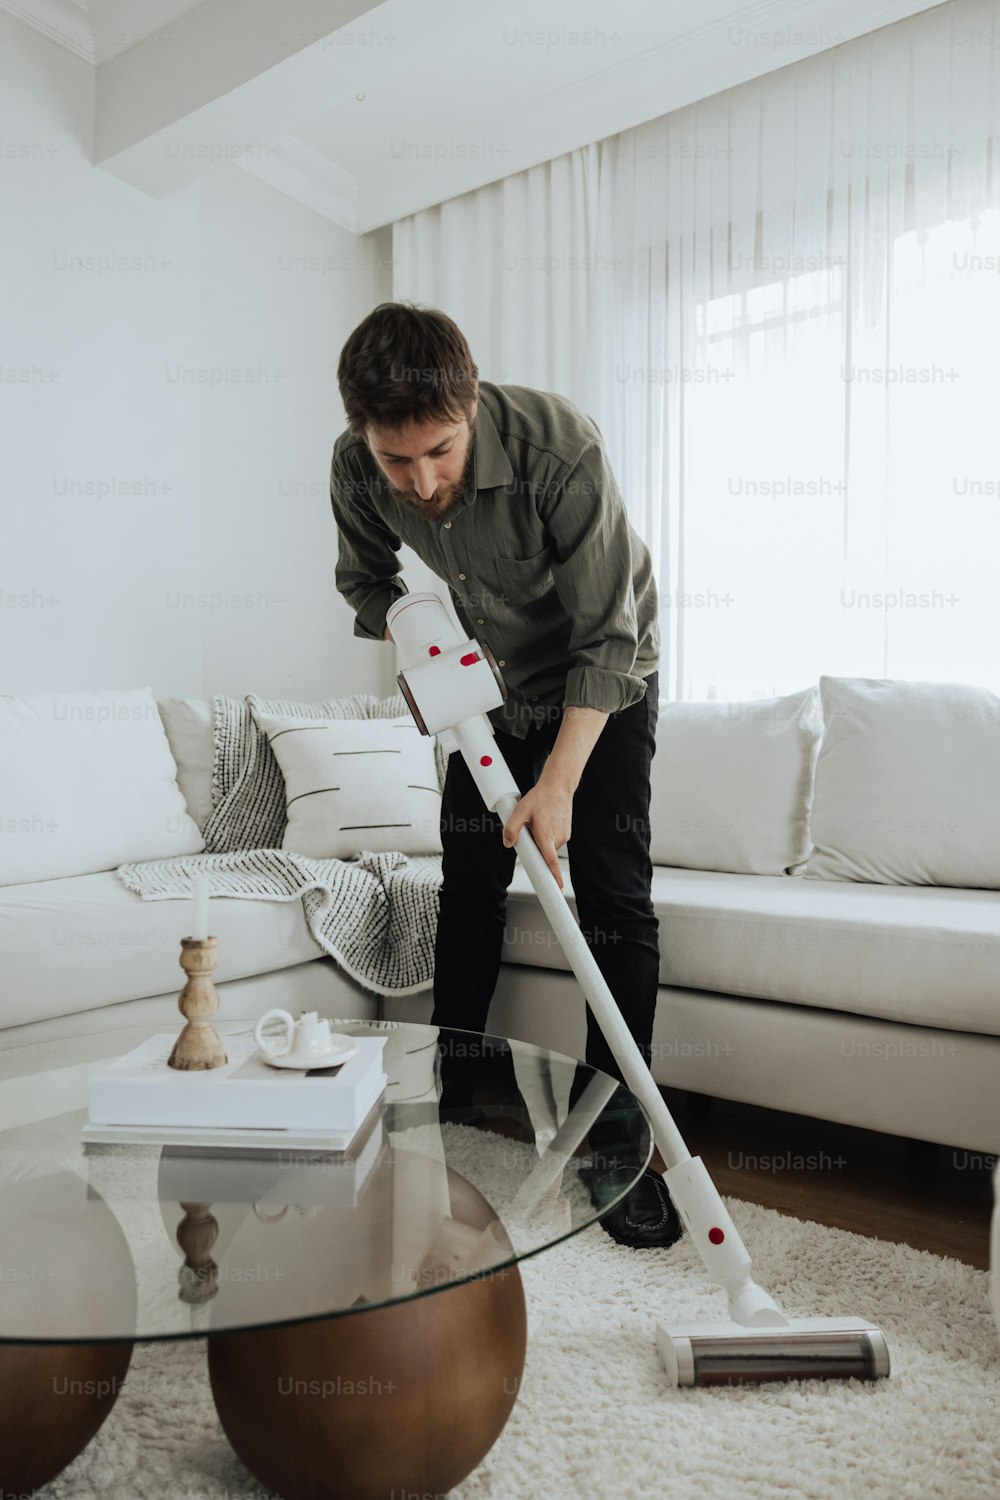 Un hombre está limpiando una sala de estar con un trapeador